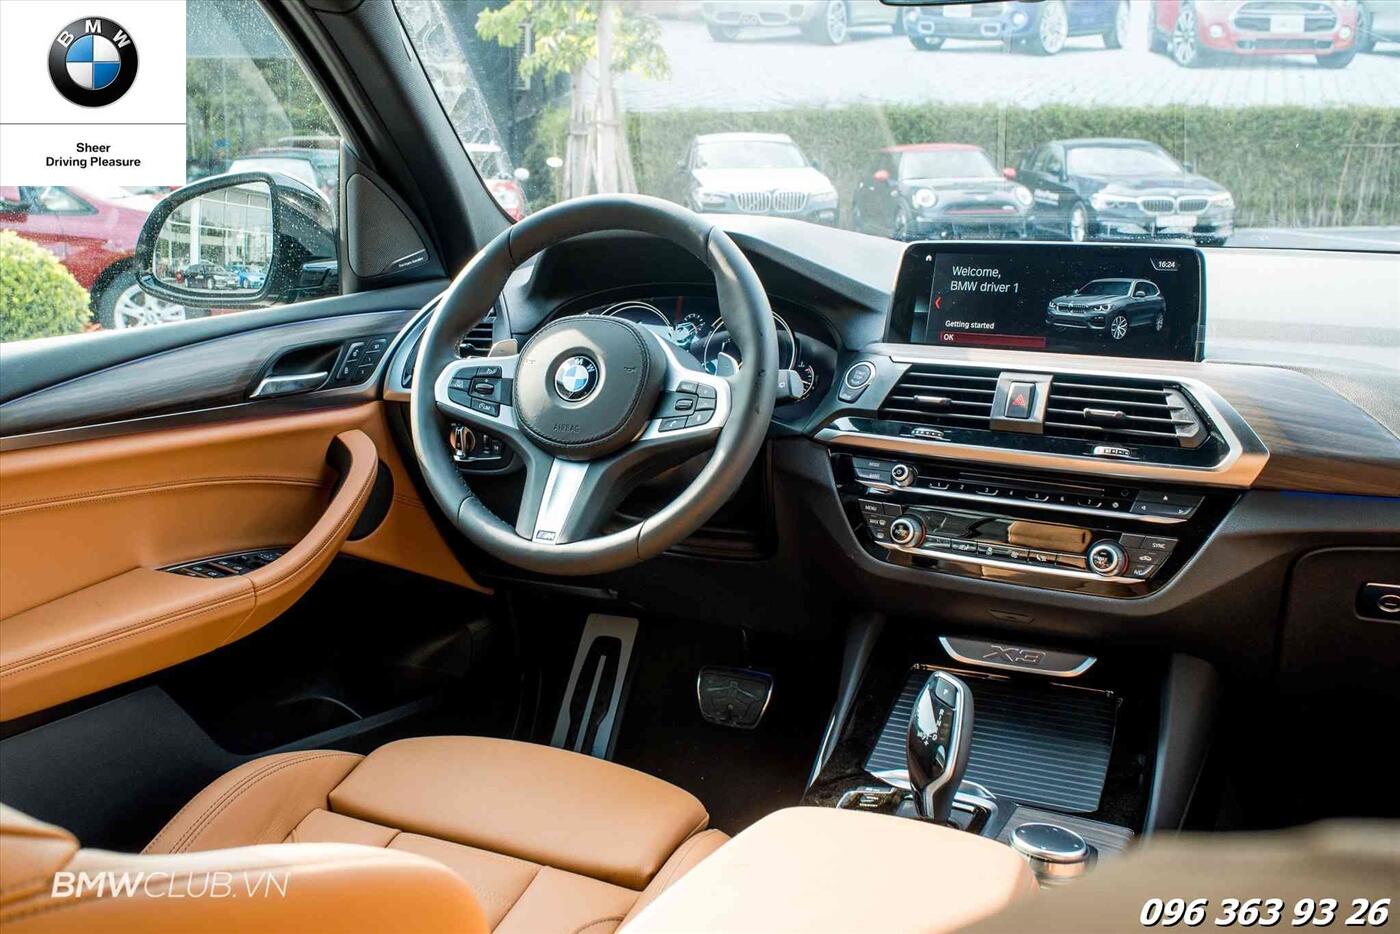 Đánh giá xe BMW X3 2018 hoàn toàn mới - Ảnh 20